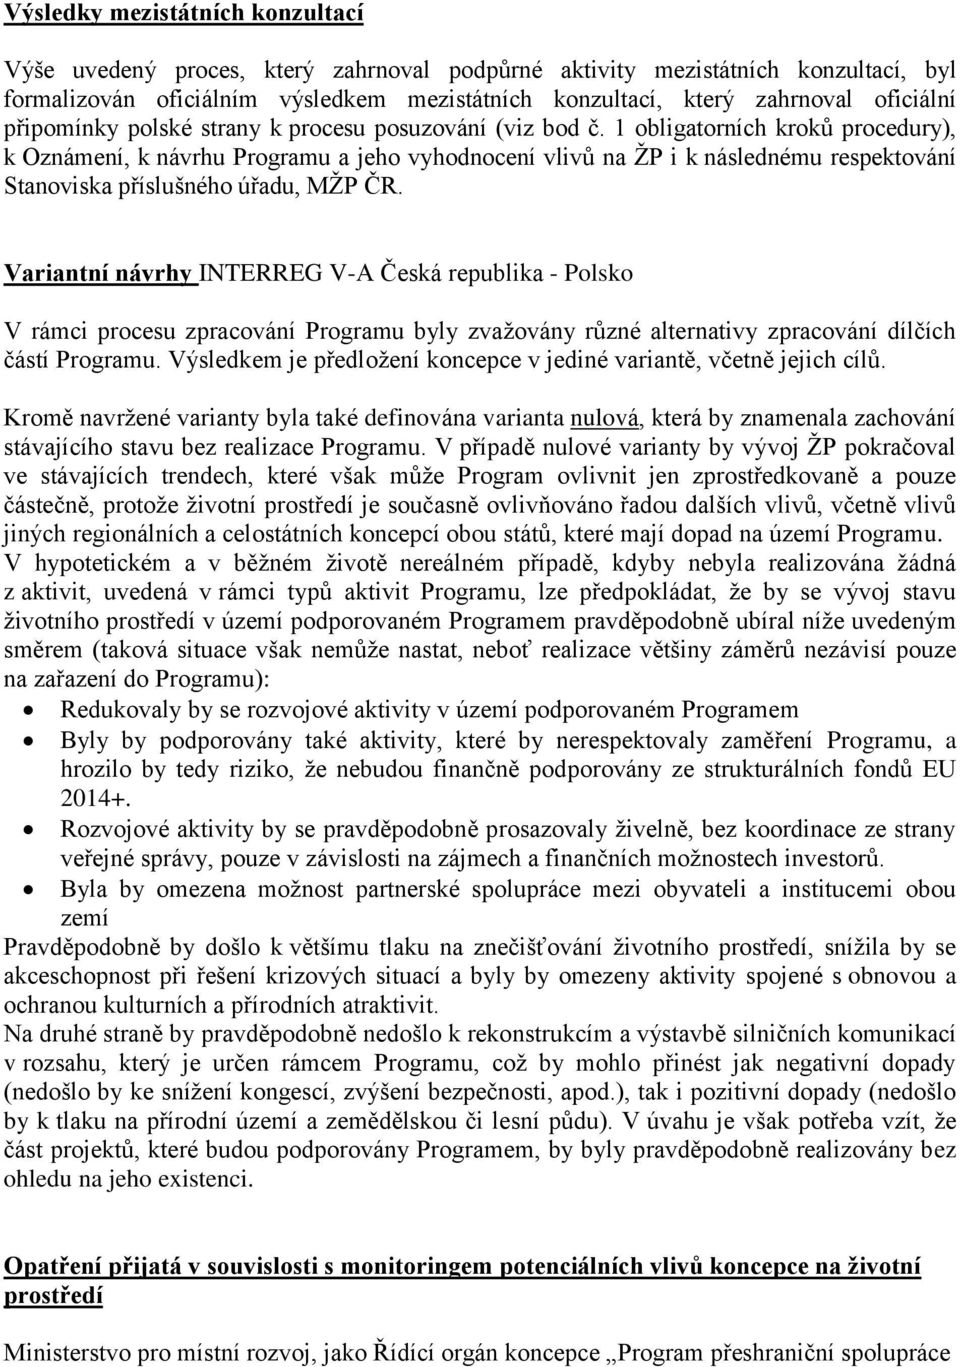 1 obligatorních kroků procedury), k Oznámení, k návrhu Programu a jeho vyhodnocení vlivů na ŽP i k následnému respektování Stanoviska příslušného úřadu, MŽP ČR.